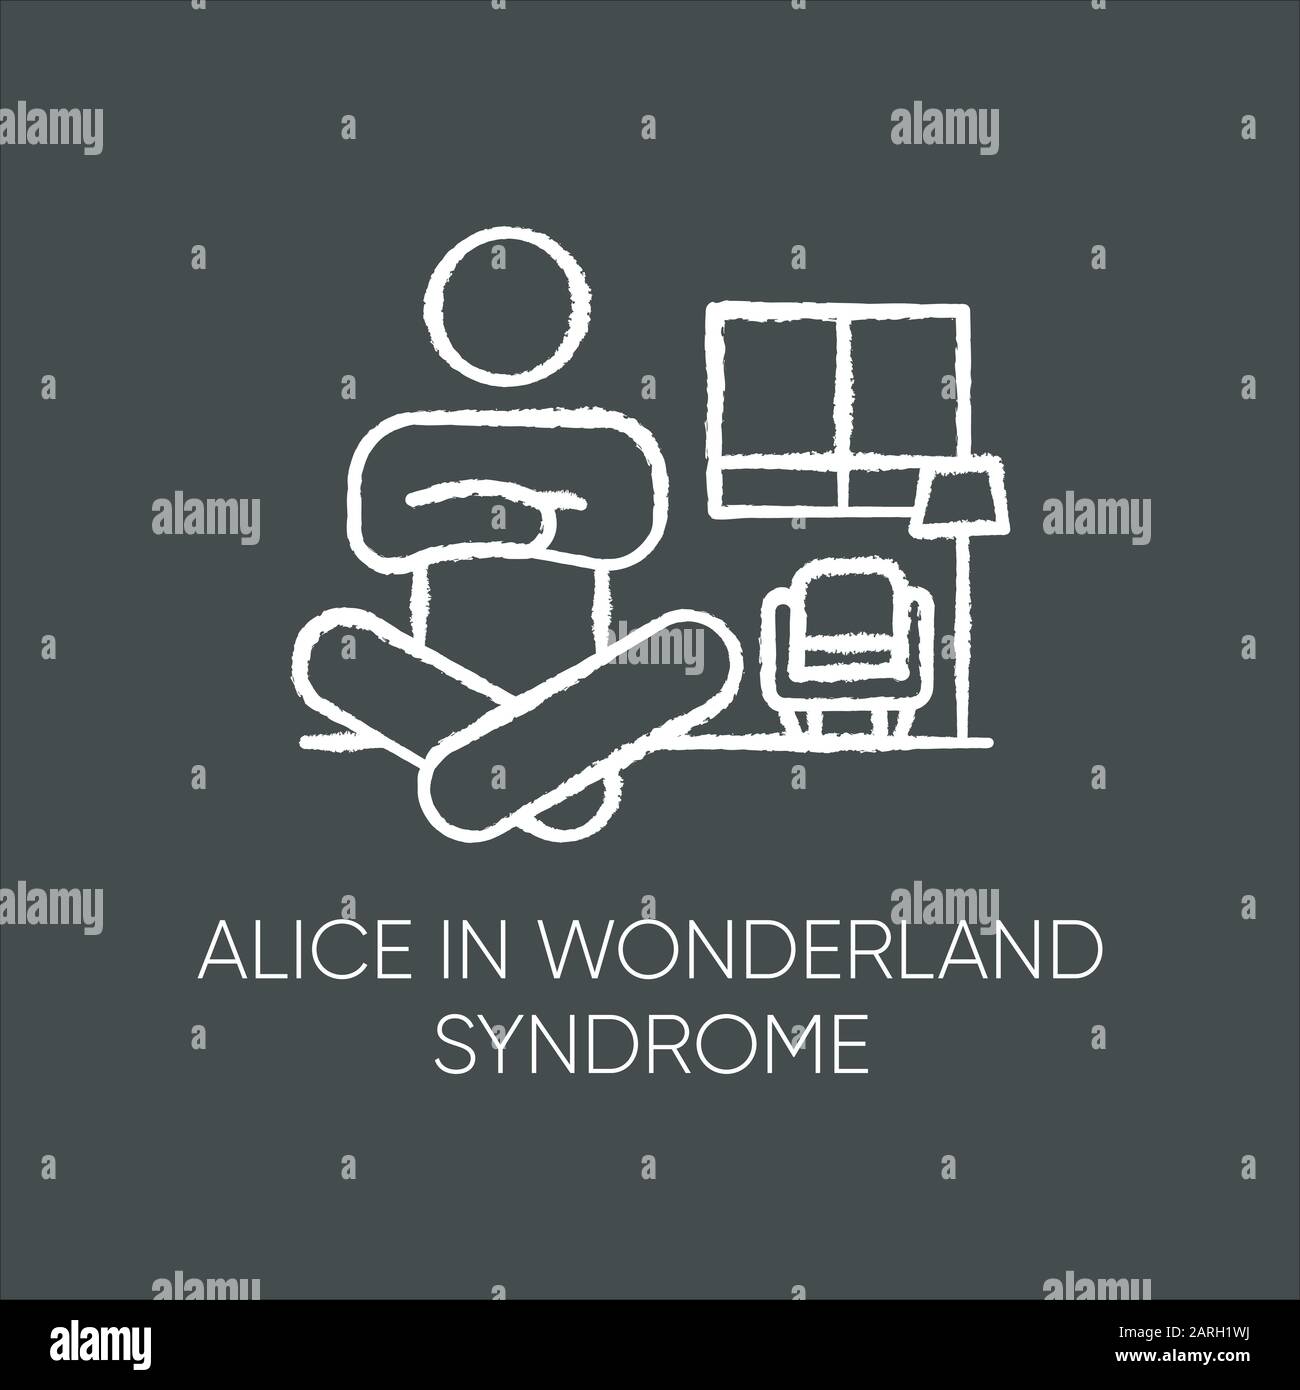 Kreidesymbol für das Alice-in-Wonderland-Syndrom. Visuelle Wahrnehmung. Verzerrung der Größe. Dysmetropsie. Sehbehinderung und Orientierungslosigkeit. Seltene psychische Störung. ICH Stock Vektor